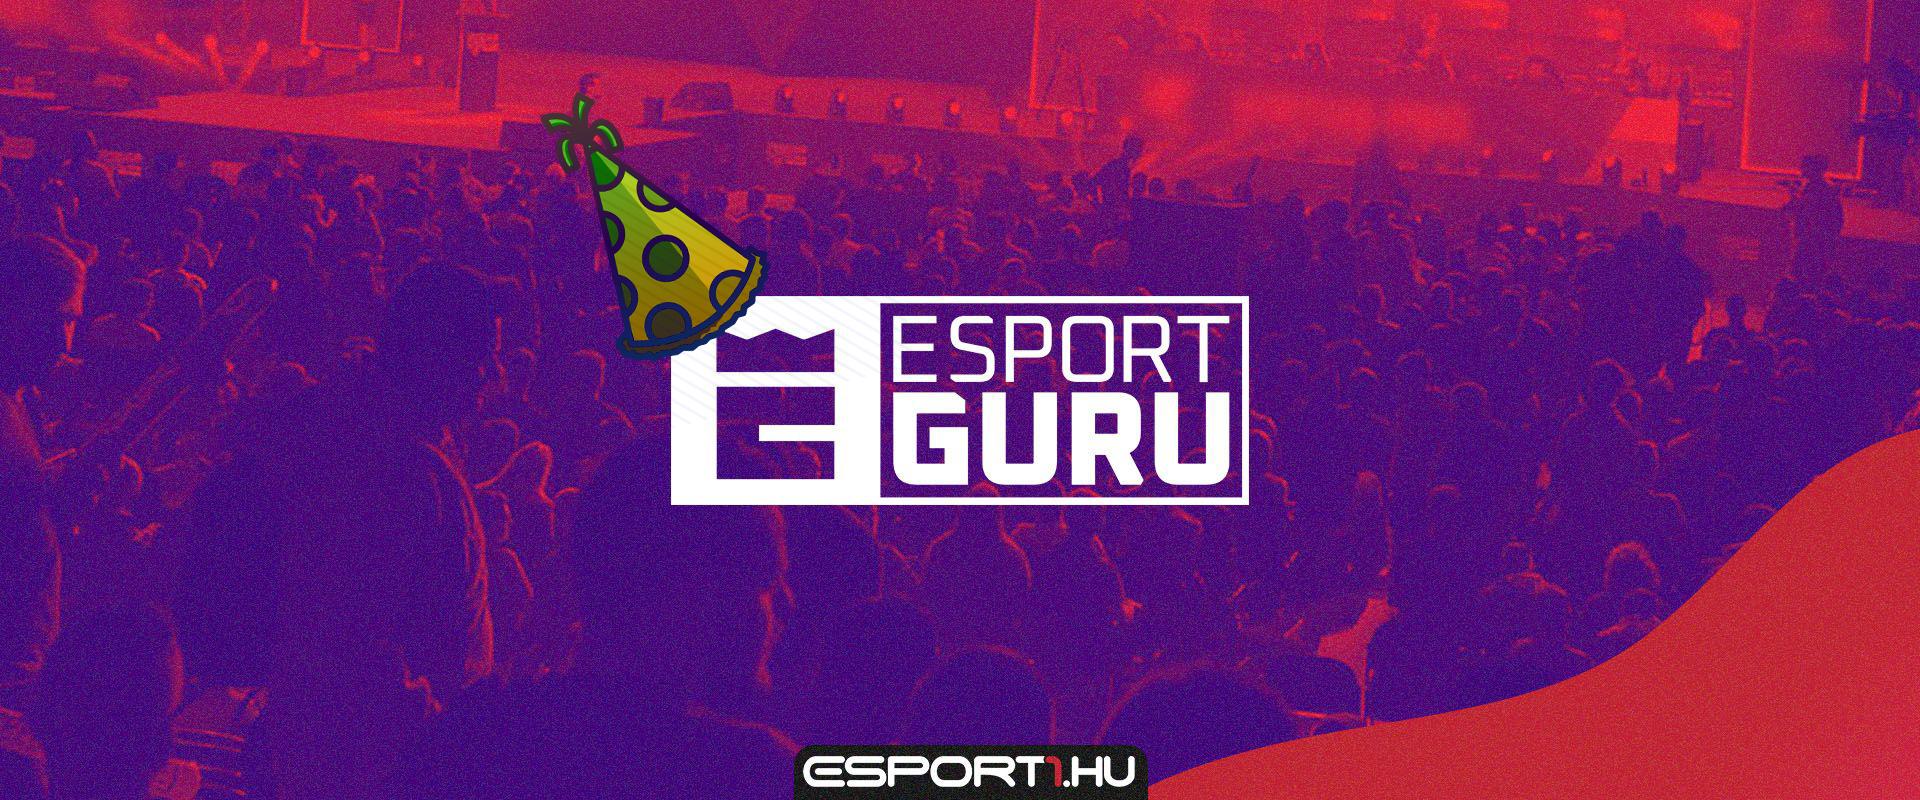 Egyéves az EsportGuru, az e-sport csatorna